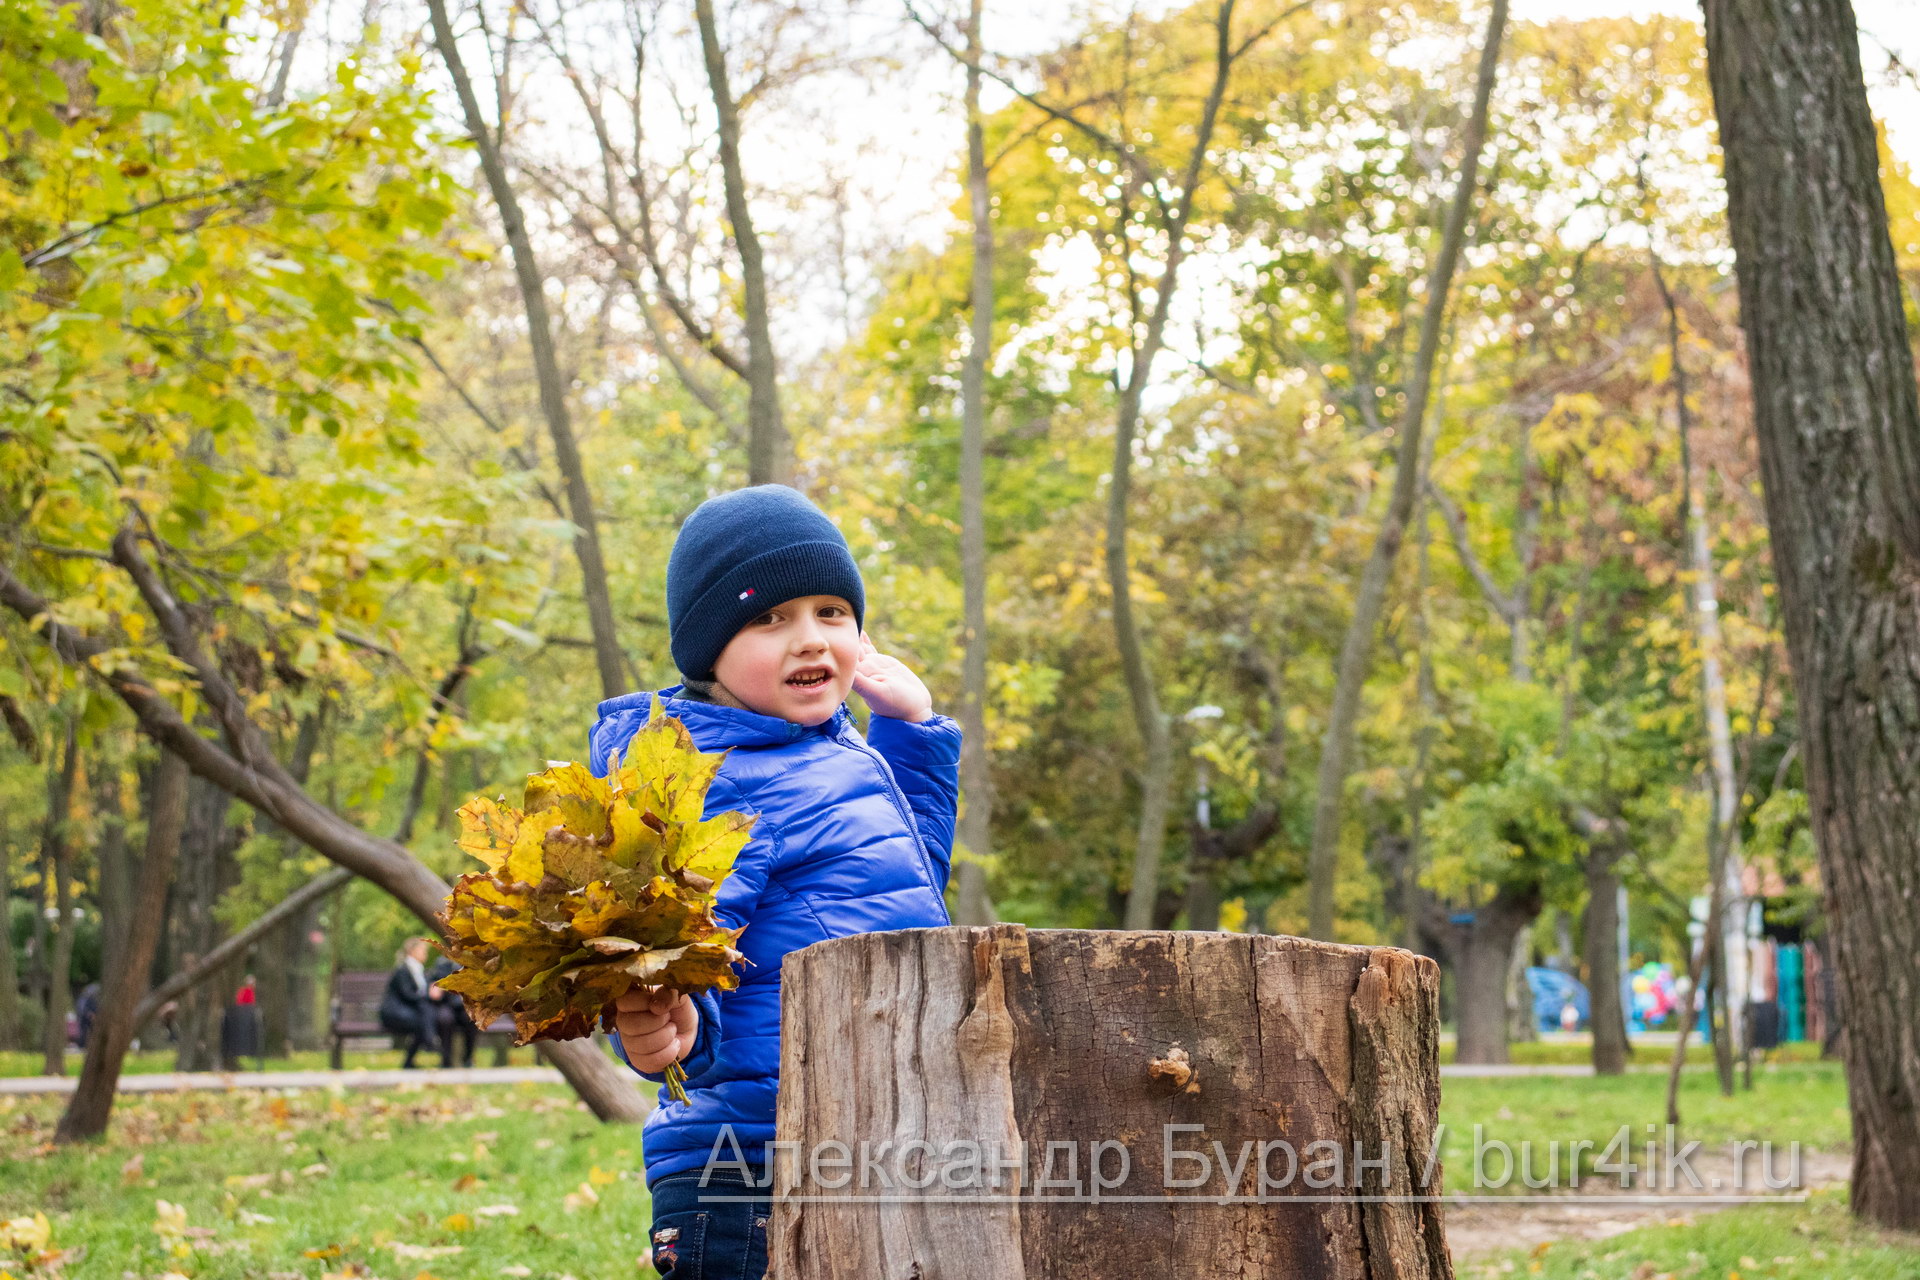 Мальчик откидывается на пене в осеннем парке